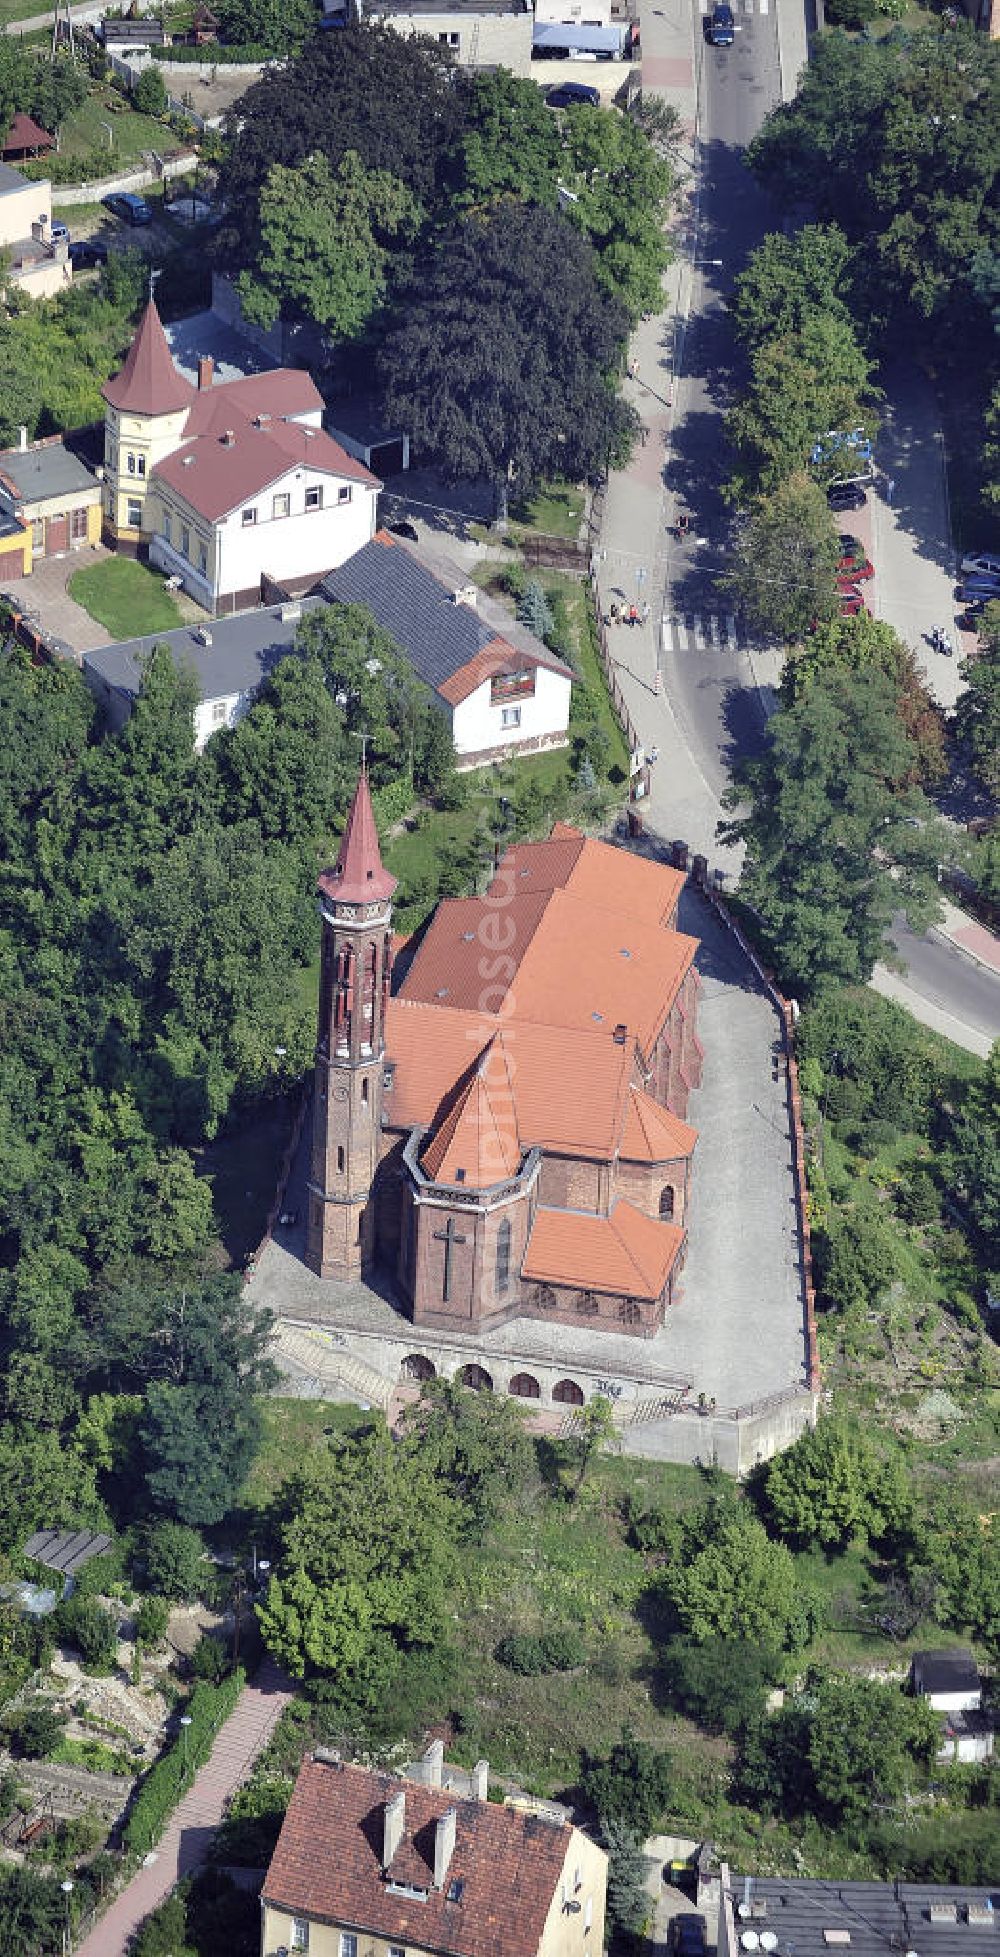 Aerial photograph Gubin - Blick auf die katholische Dreifaltigkeitskirche. Sie wurde im 19. Jahrhundert errichtet. View of the Catholic Holy Trinity Church. It was built in the 19th Century.